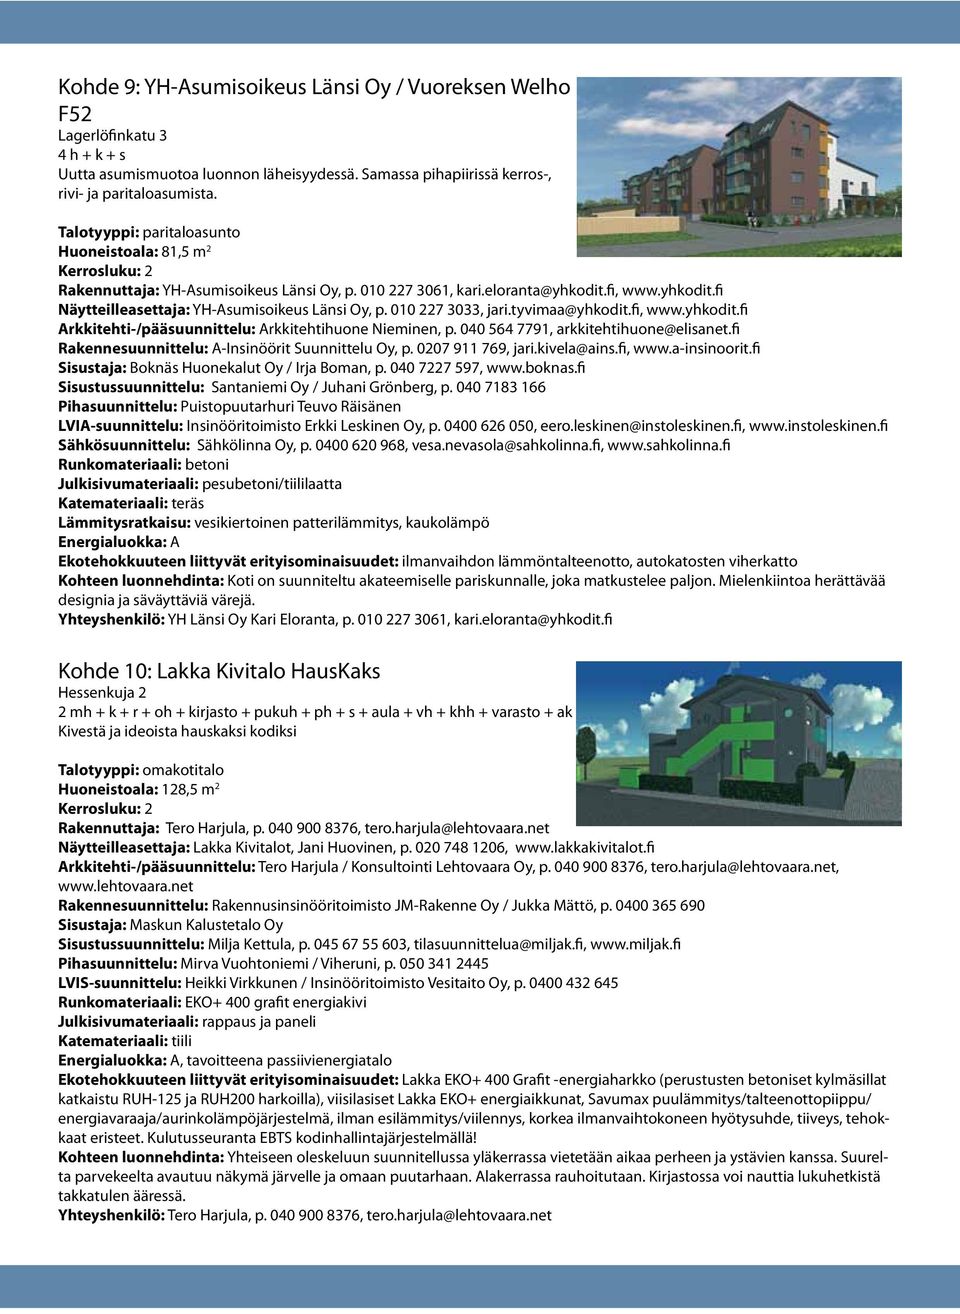 010 227 3033, jari.tyvimaa@yhkodit.fi, www.yhkodit.fi Arkkitehti-/pääsuunnittelu: Arkkitehtihuone Nieminen, p. 040 564 7791, arkkitehtihuone@elisanet.